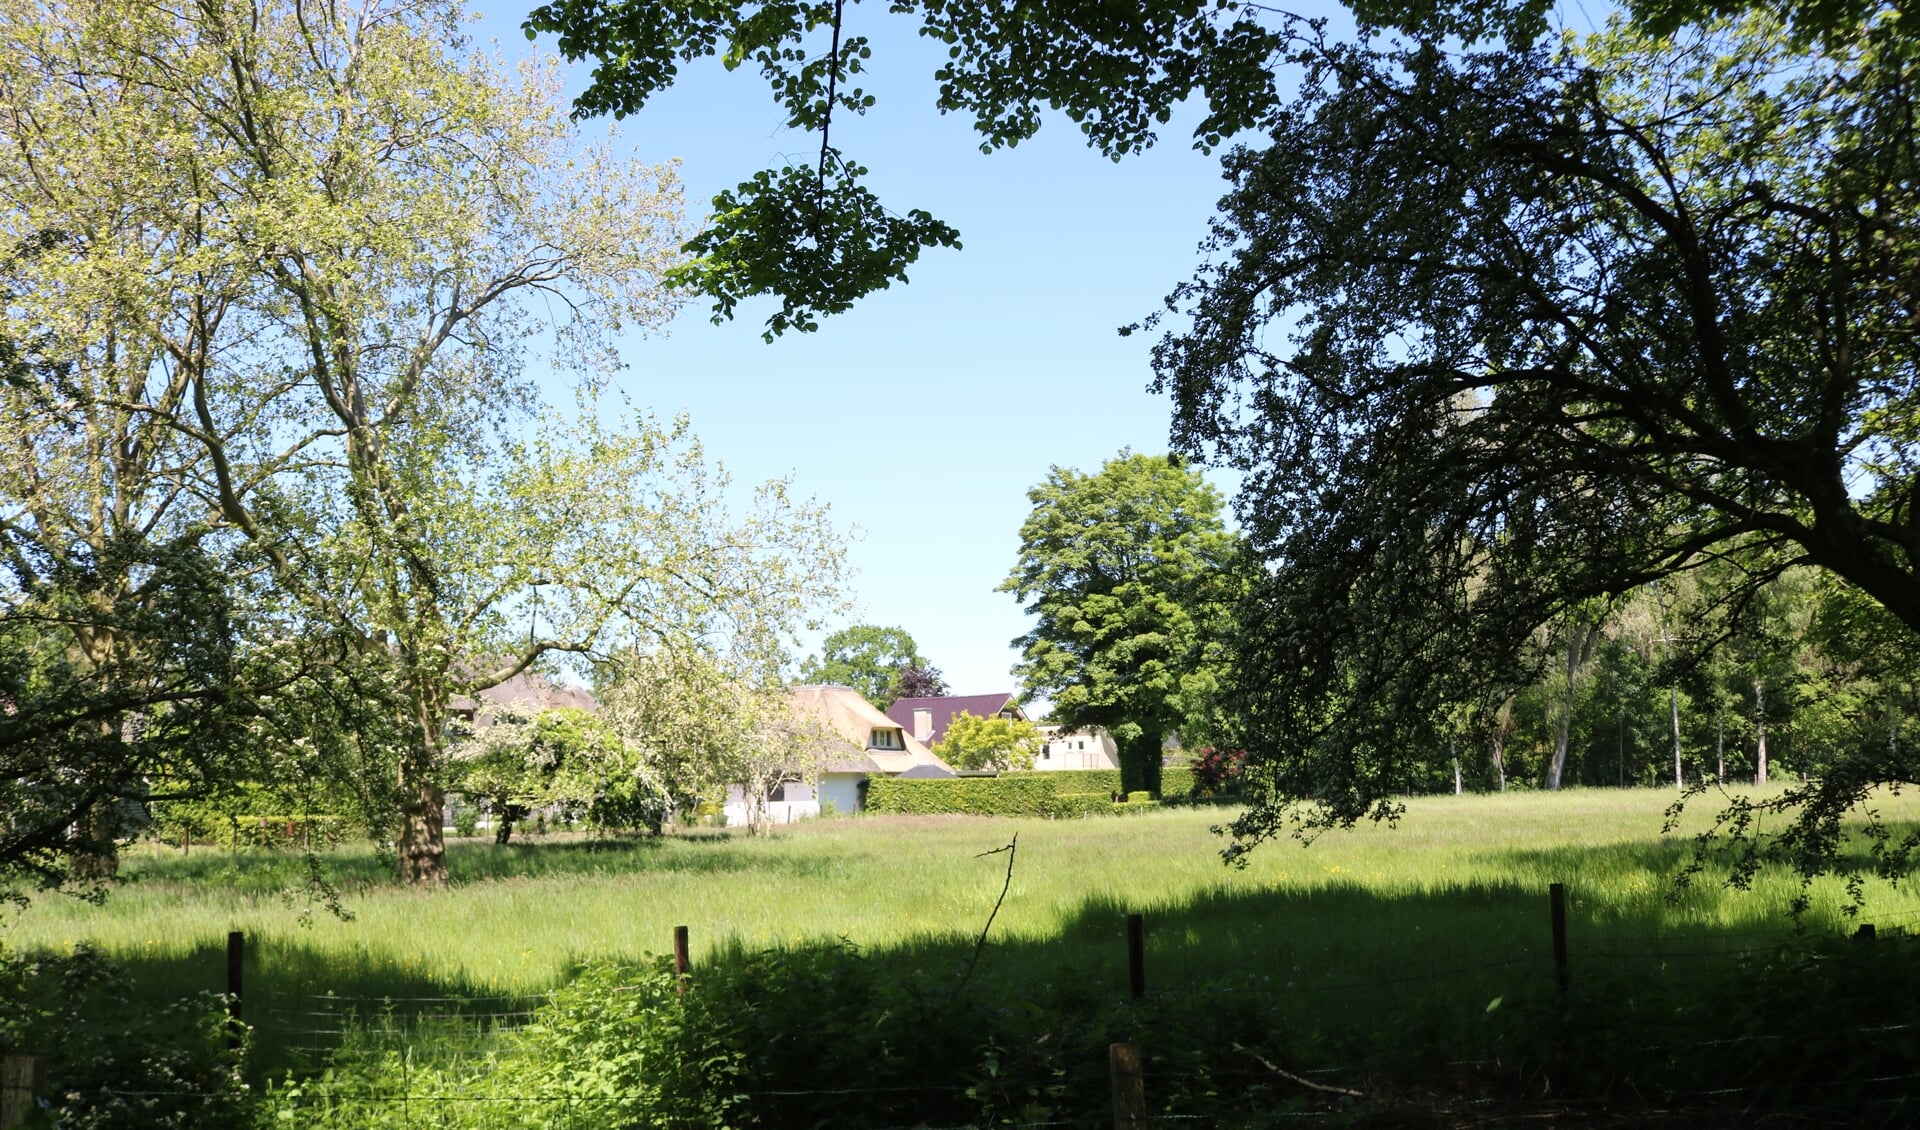 RIJSSEN - Het bouwgebied voor drie woningen achter de Stokmansveldweg gezien vanaf de Korteboslaan.